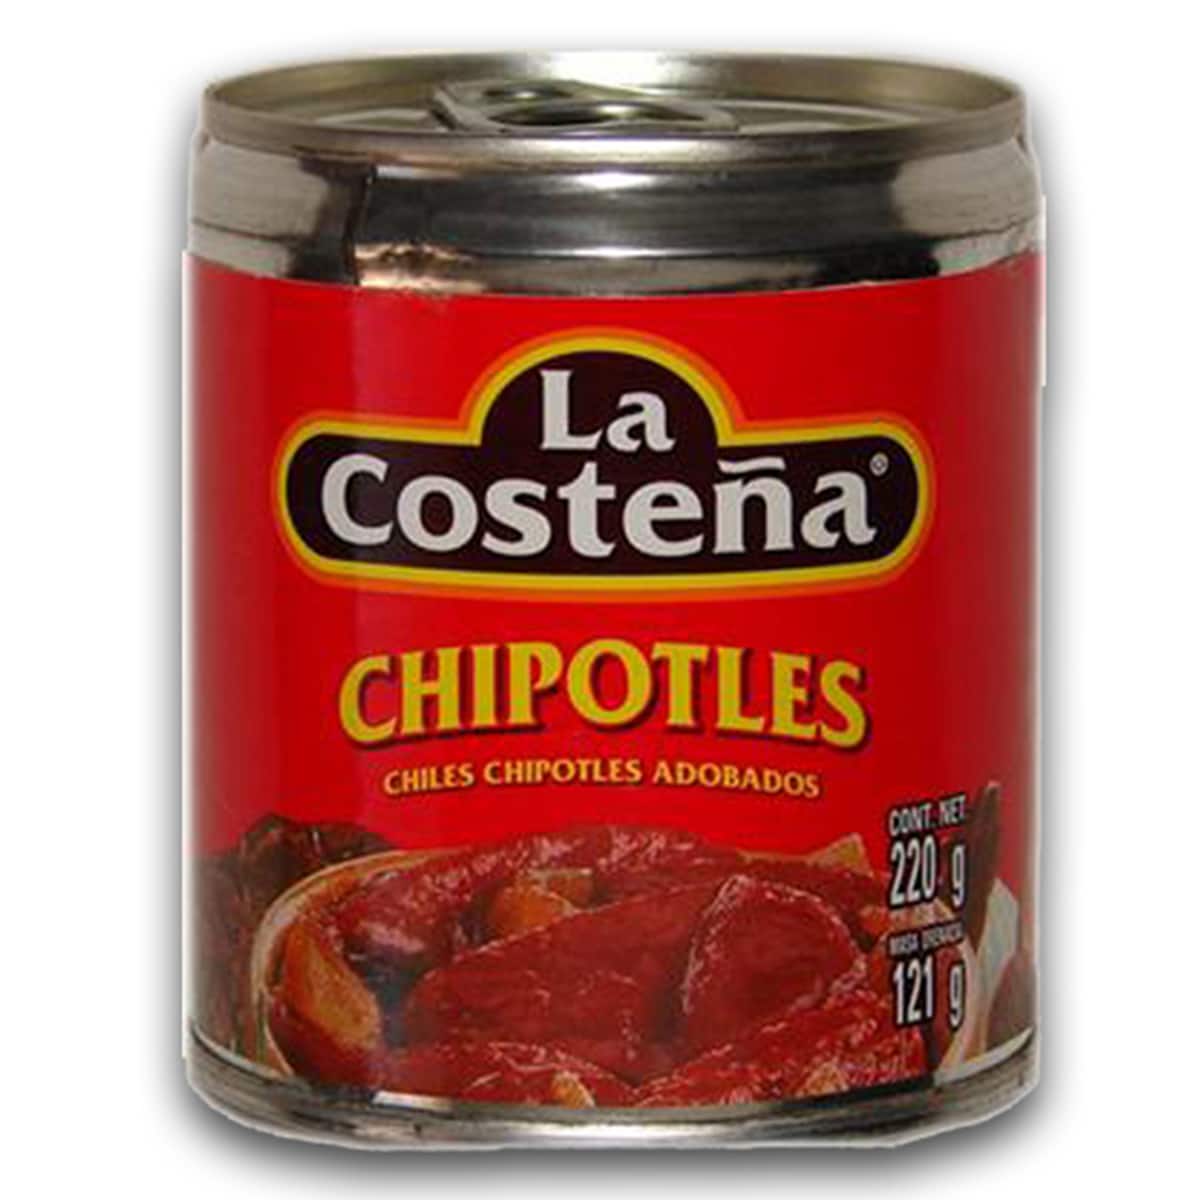 Buy La Costena Chipotles (Chiles Chipotles Adobados) - 220 gm